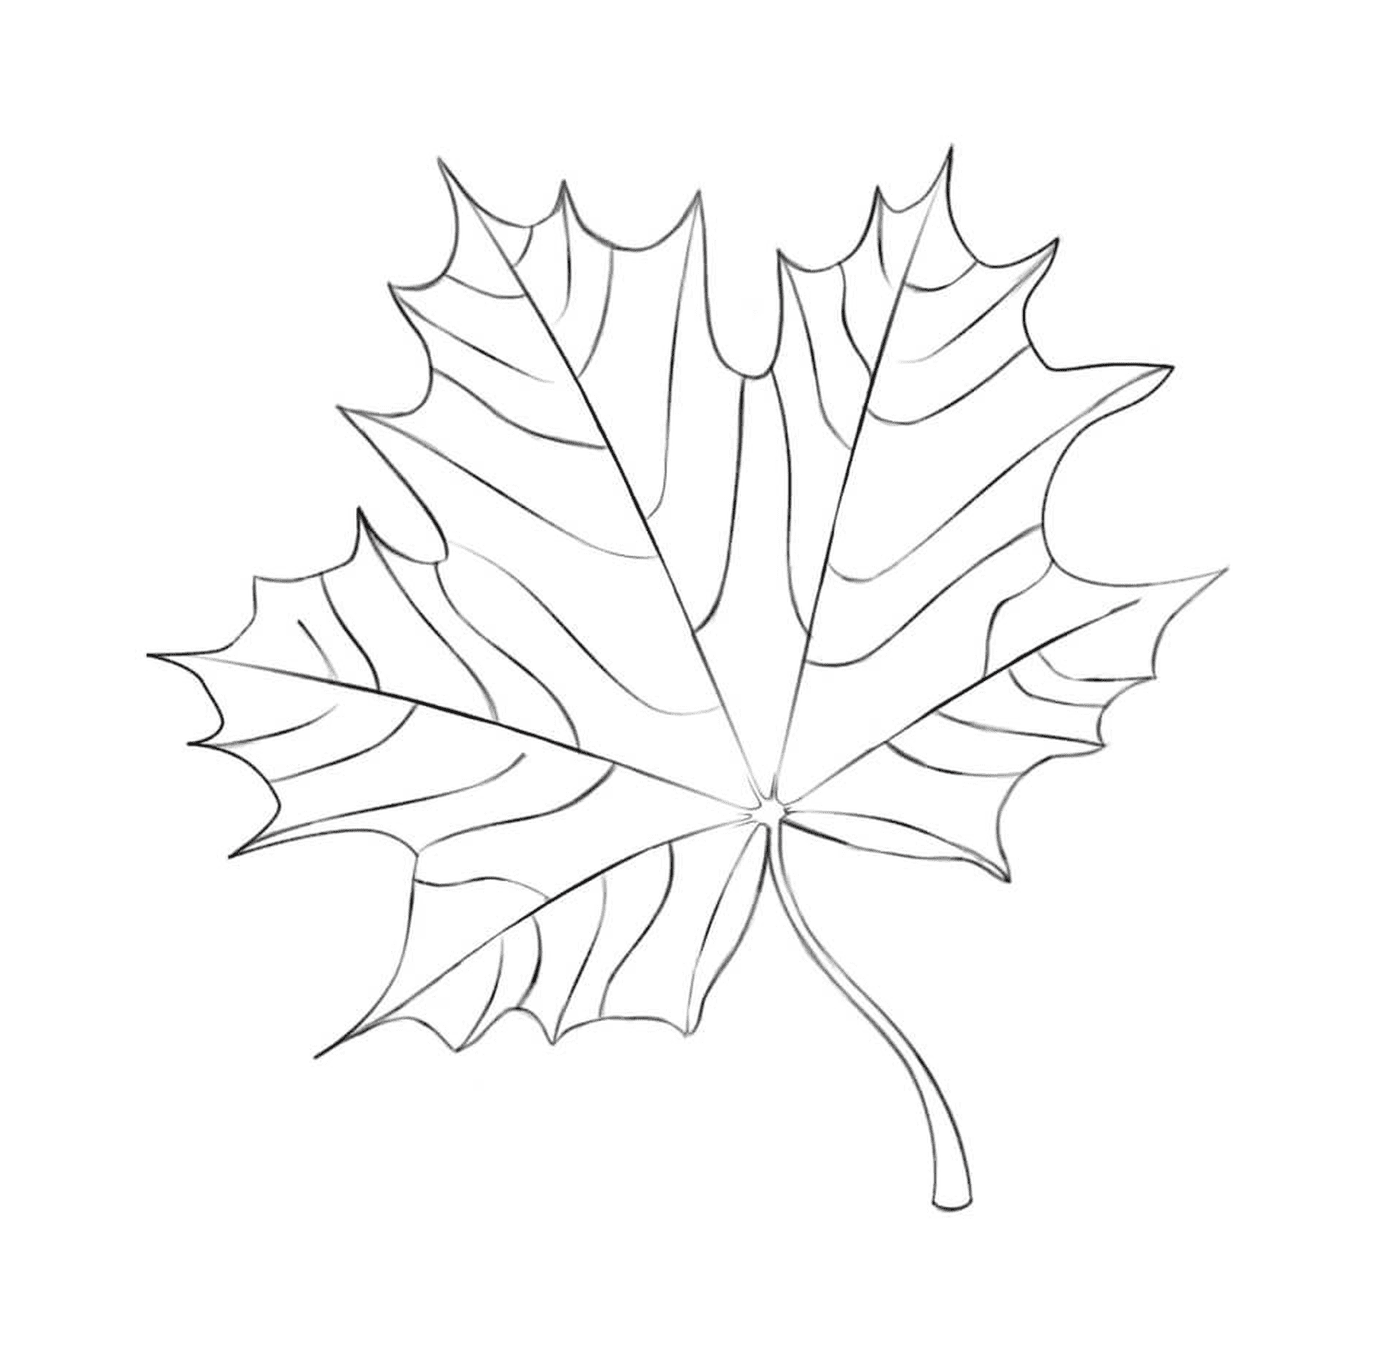  Uma folha de bordo desenhada 